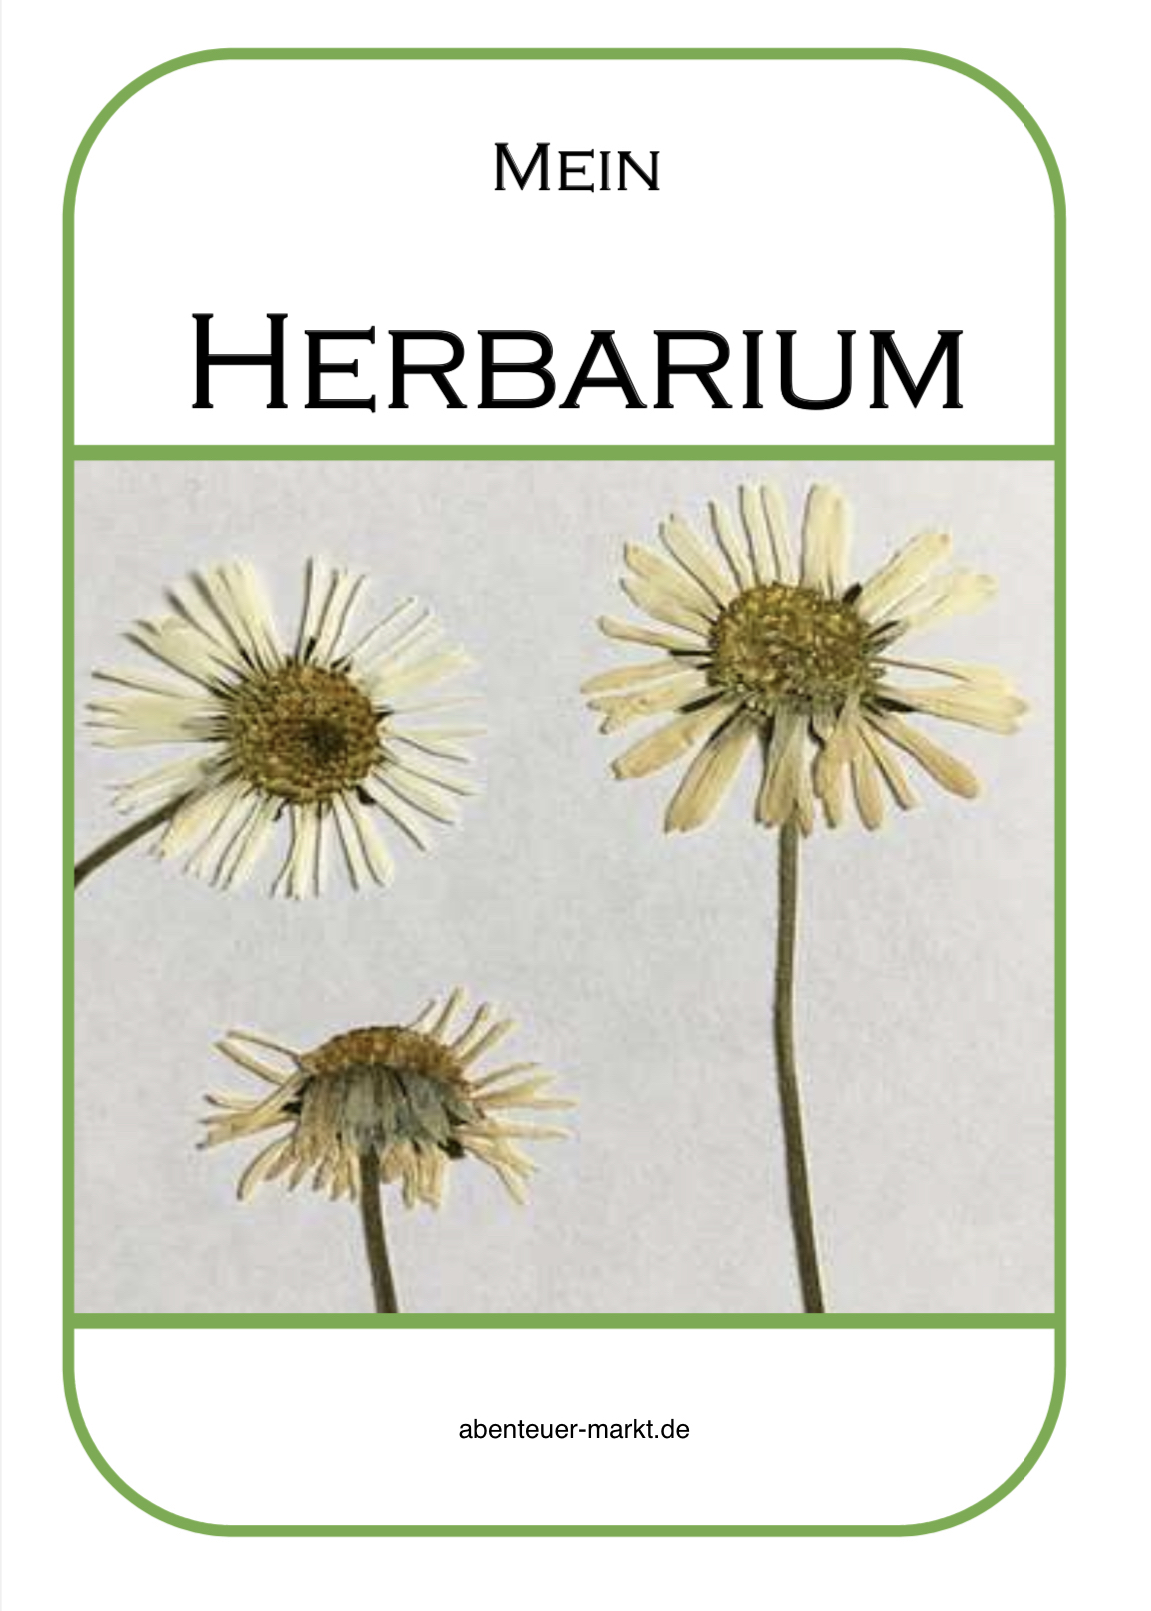 Bild zum Schritt 25 für das Bastel- und DIY-Abenteuer für Kinder: 'Gestaltet euch ein Herbarium mit Blumen, wie z.B. Gänseblümchen, Rotklee,...'